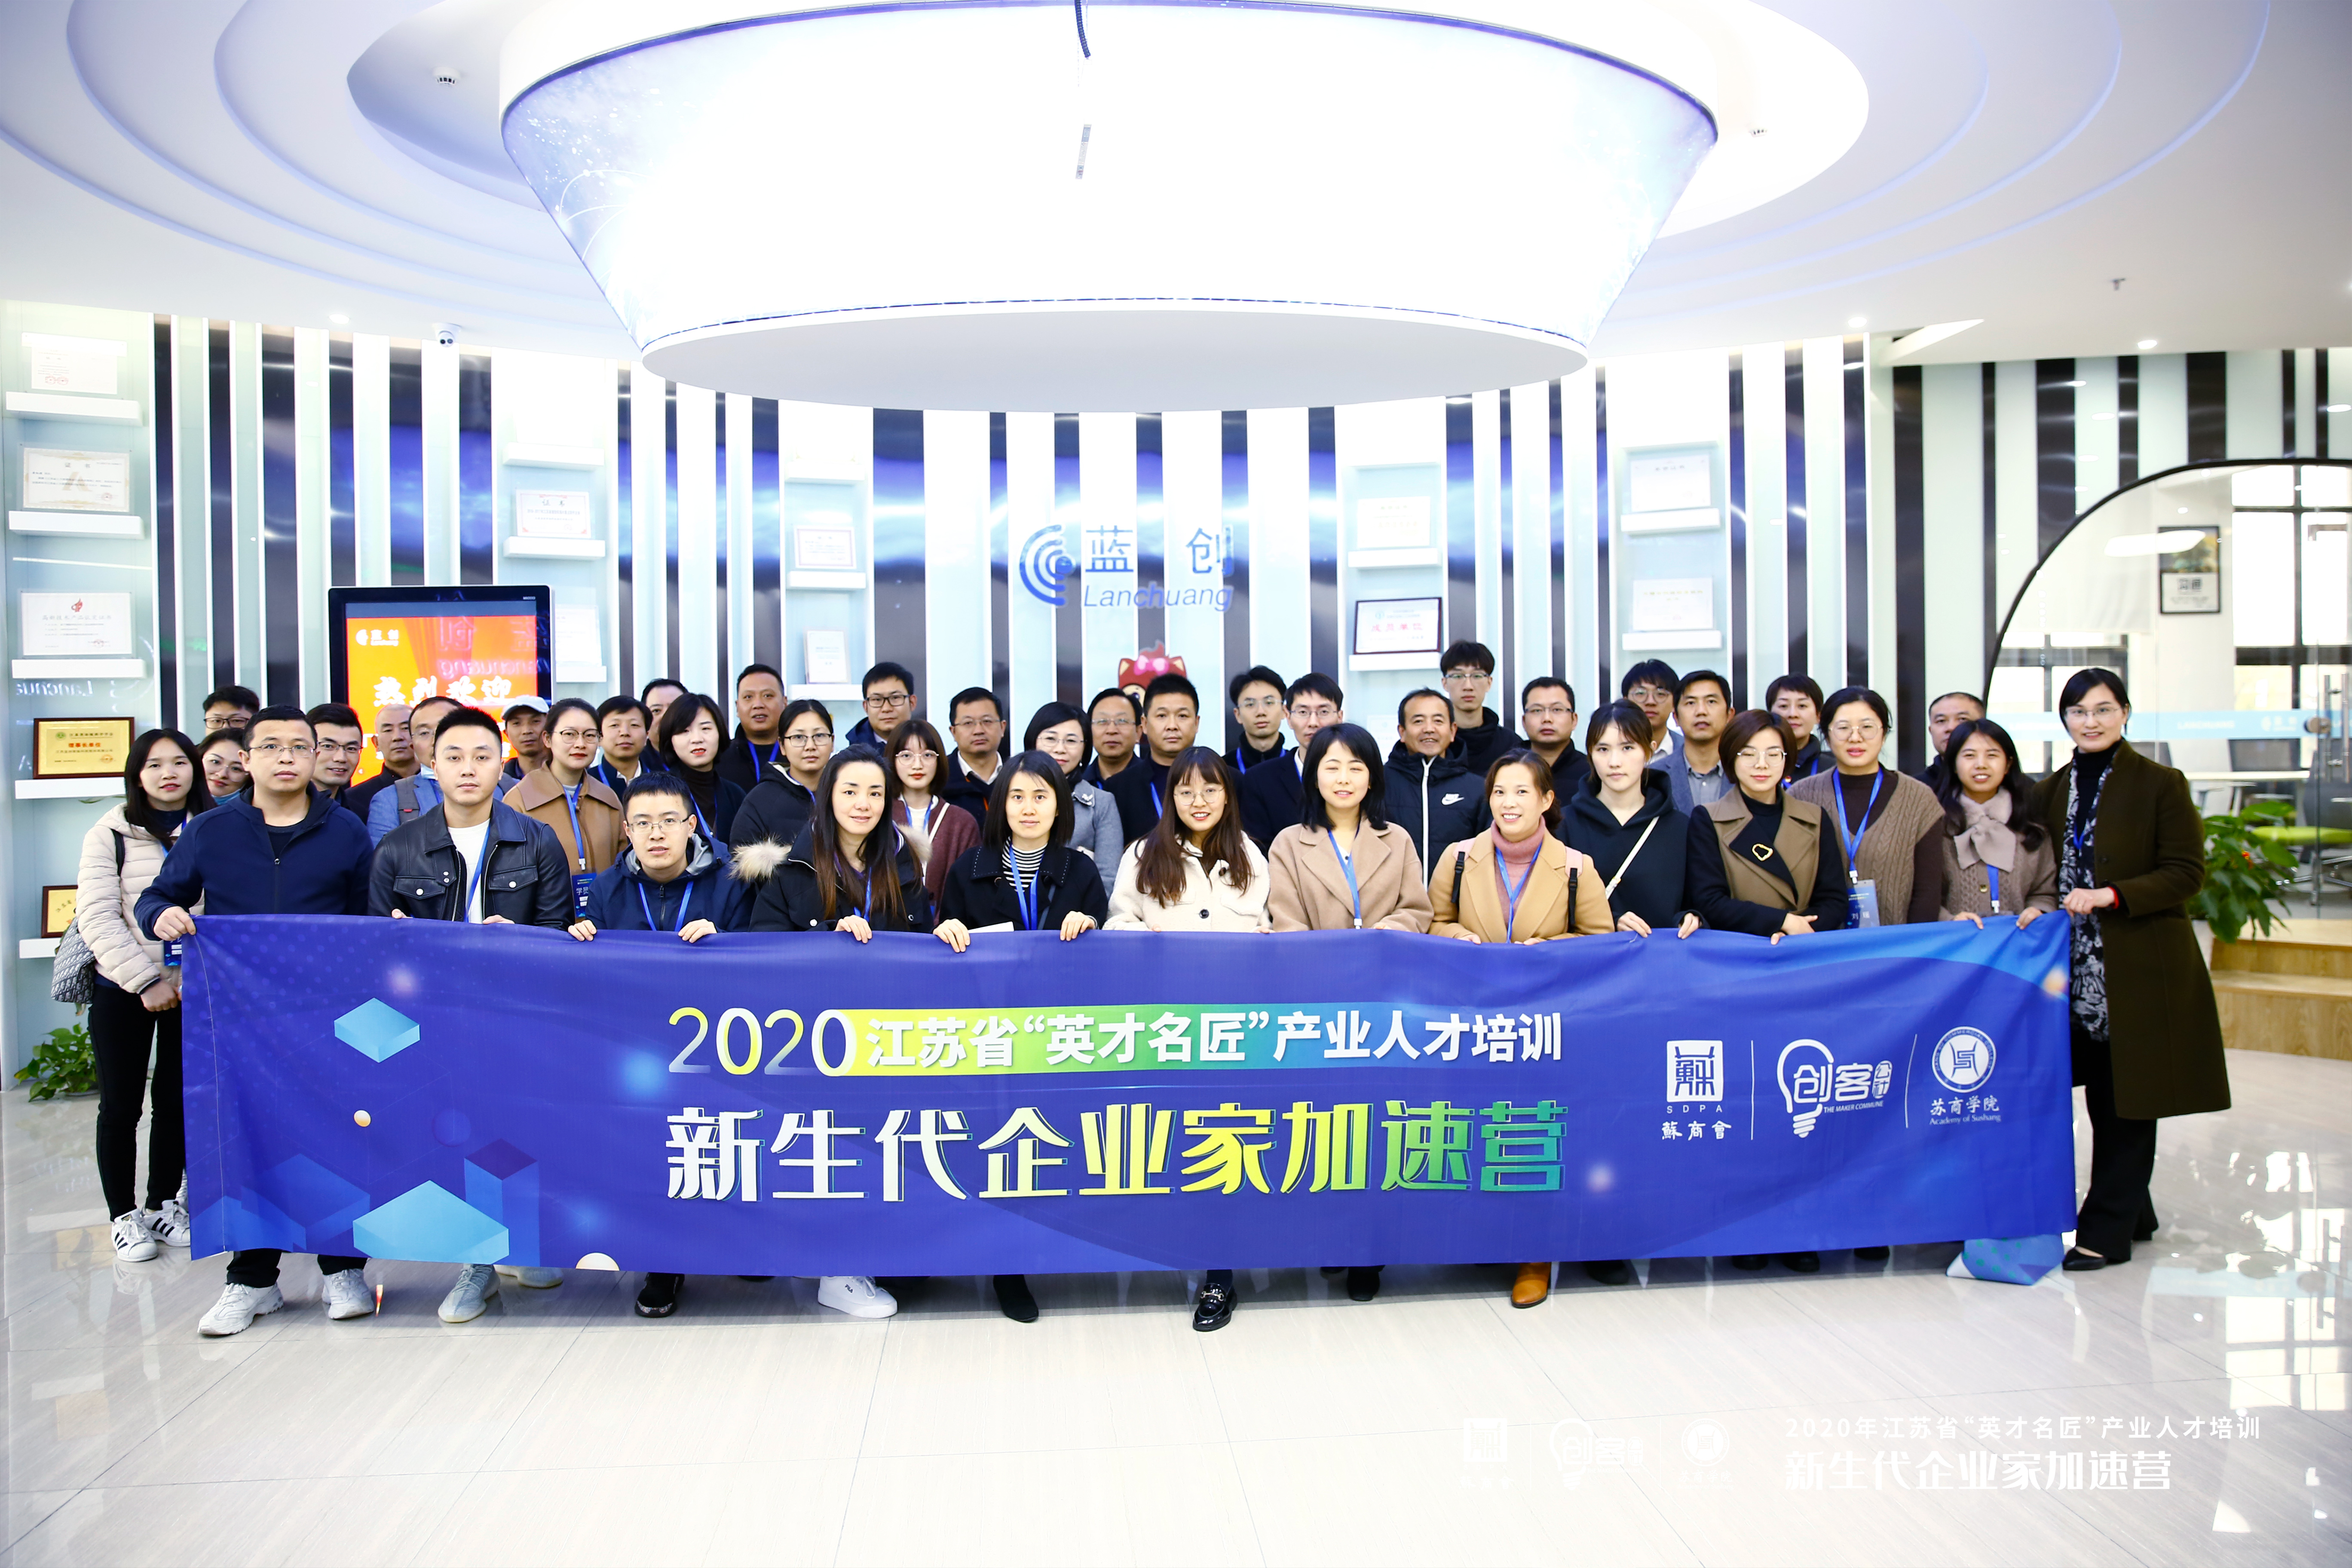 Træningskursus Acceleration Camp for New Generation Iværksættere i det sydlige Jiangsu